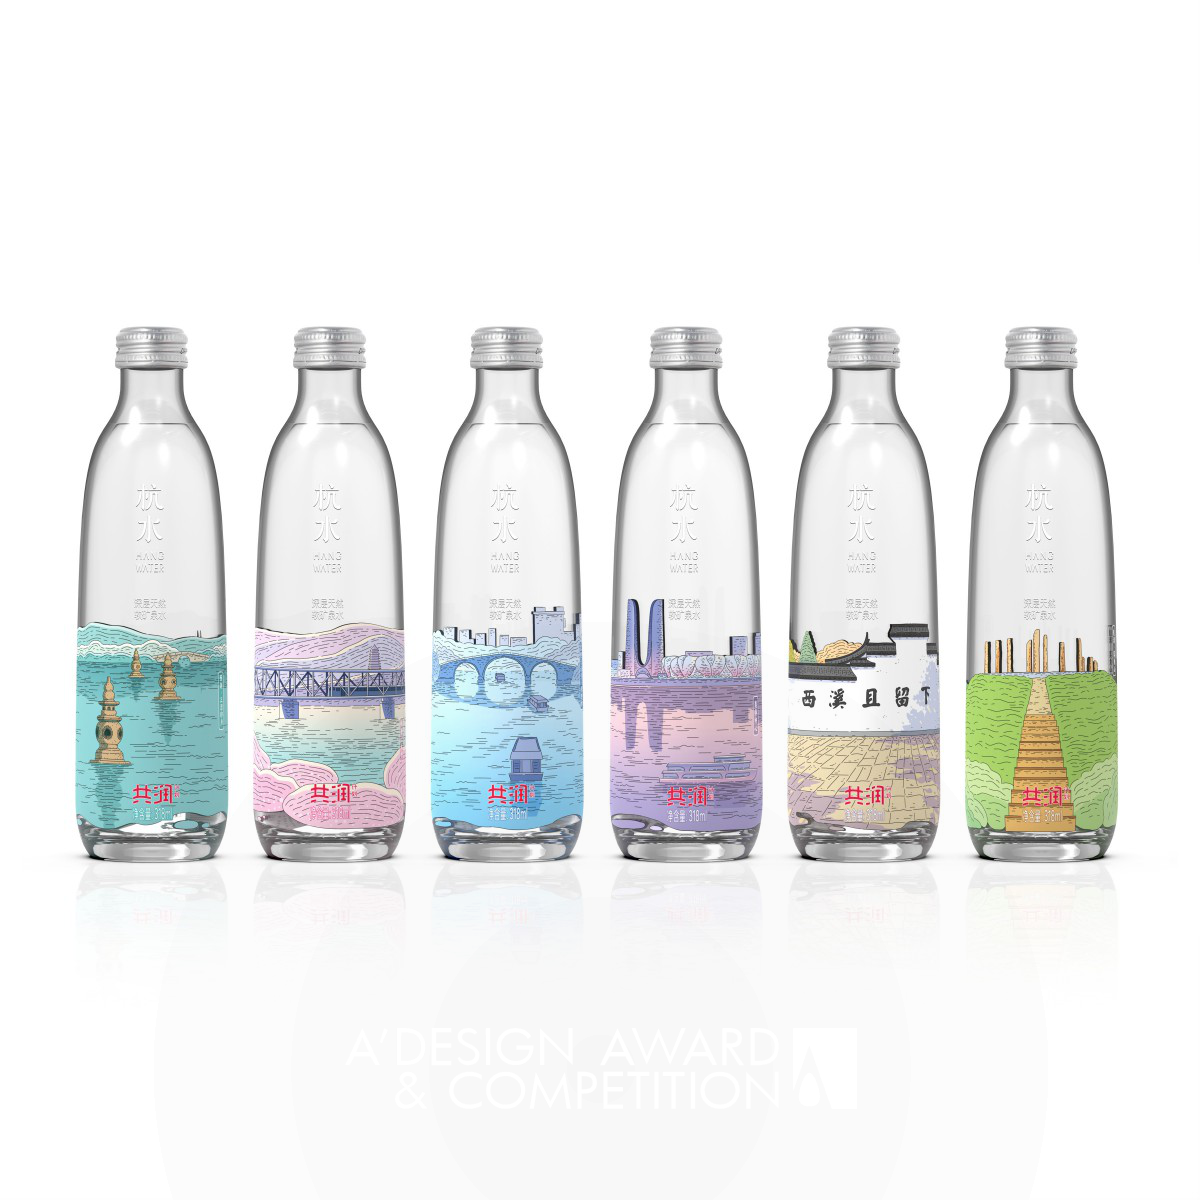 Hangzhou Scenery Mineral Water Packaging